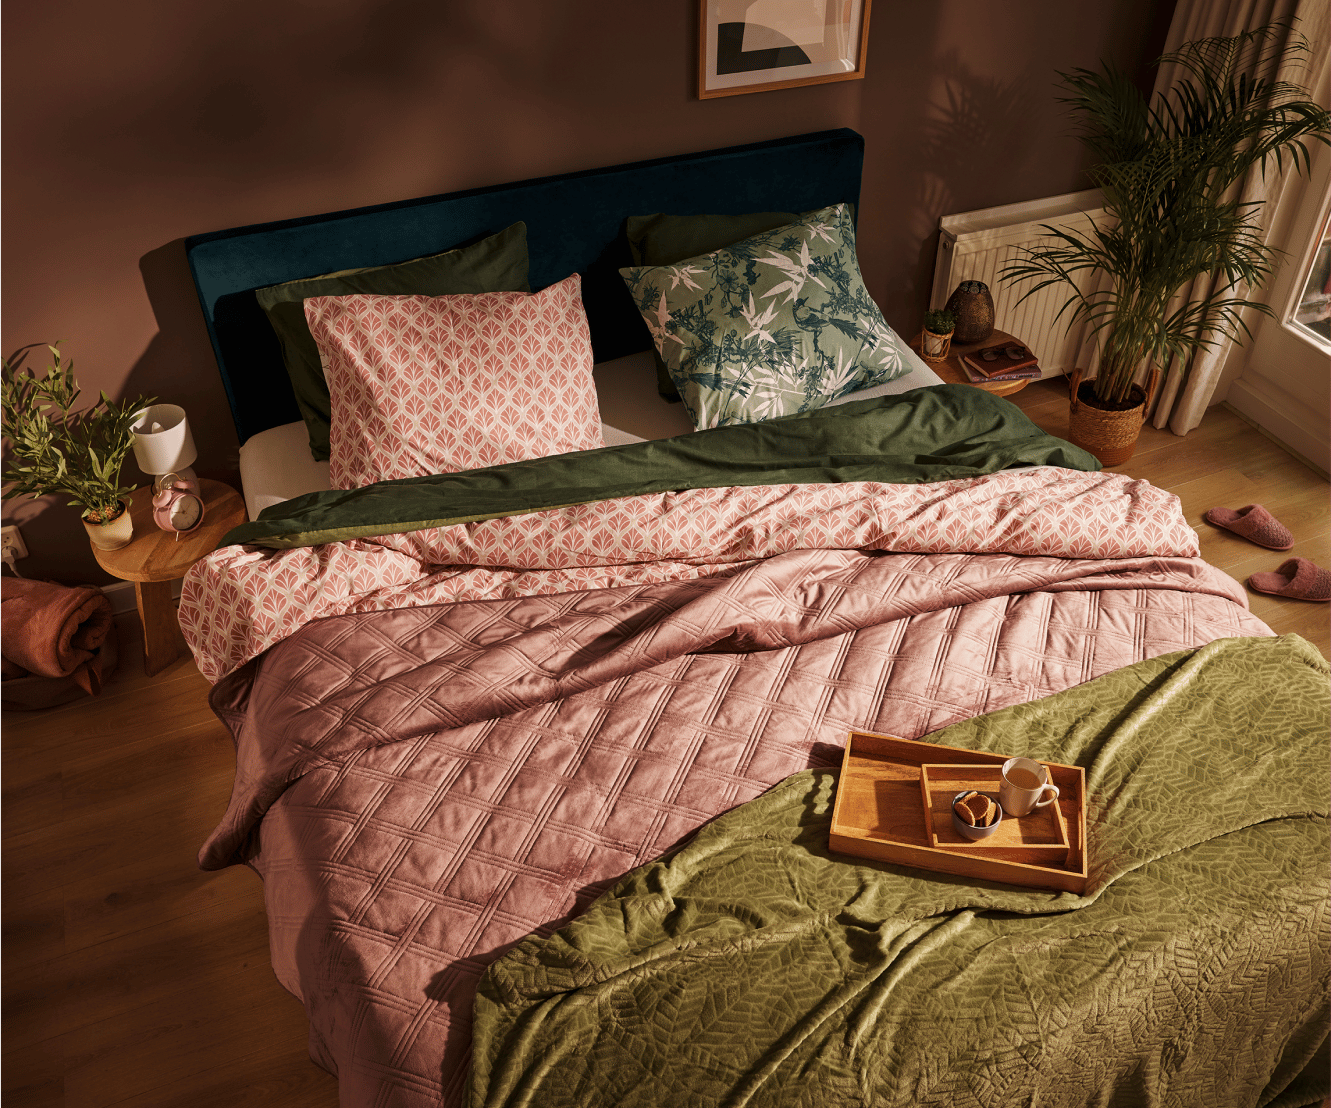 Roupa de cama feita de algodão adquirido de forma responsável